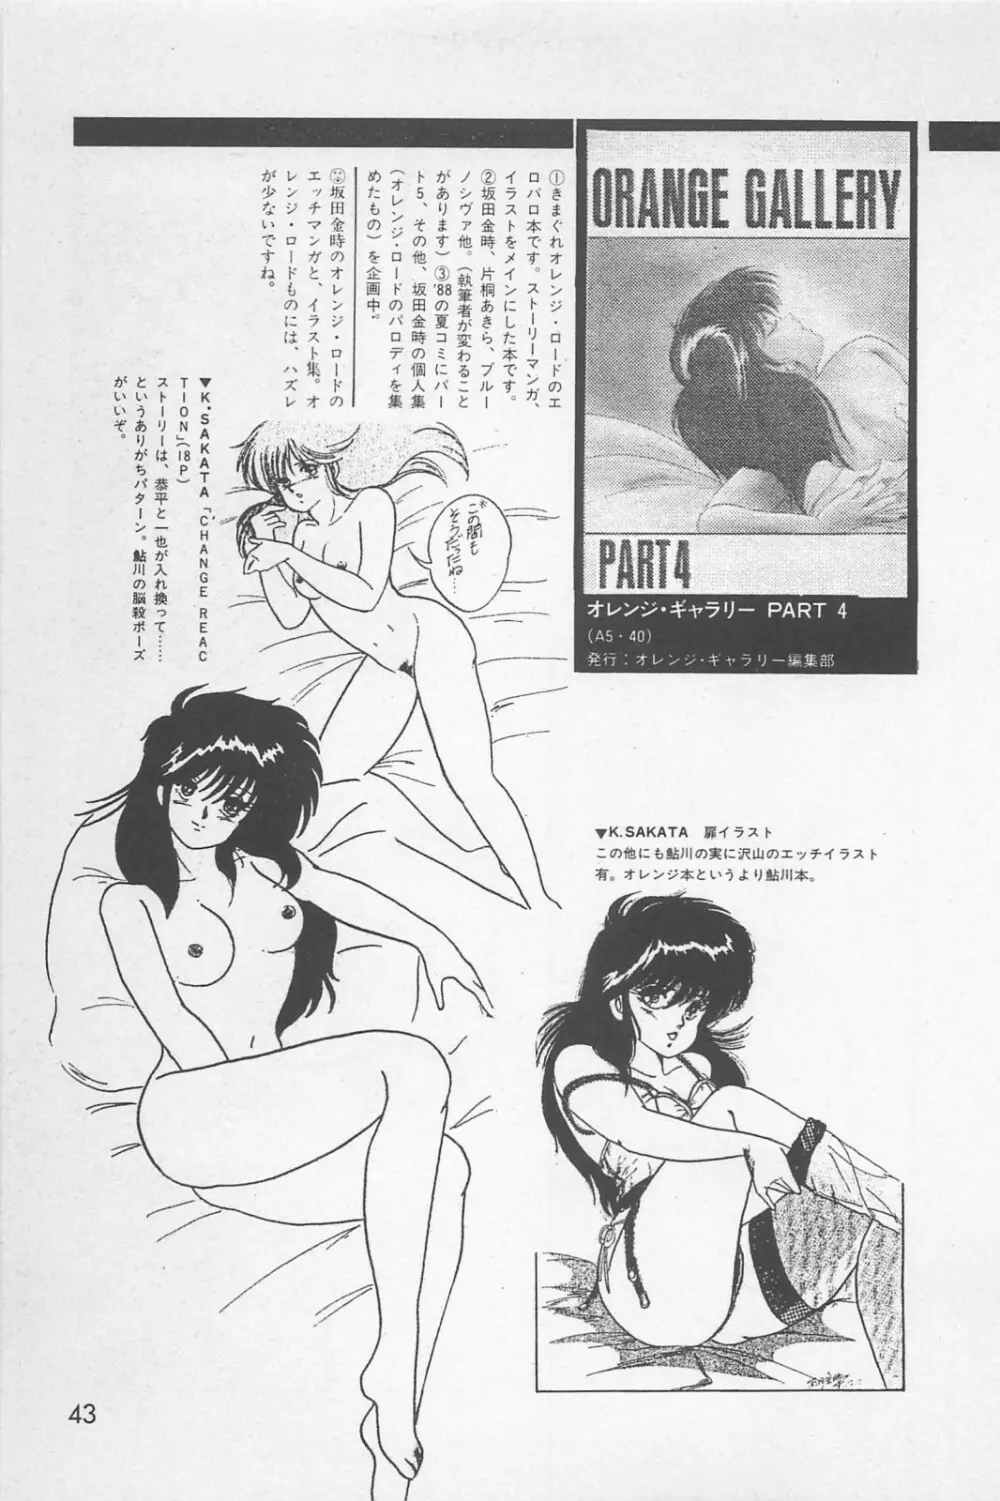 美少女症候群 1985 45ページ